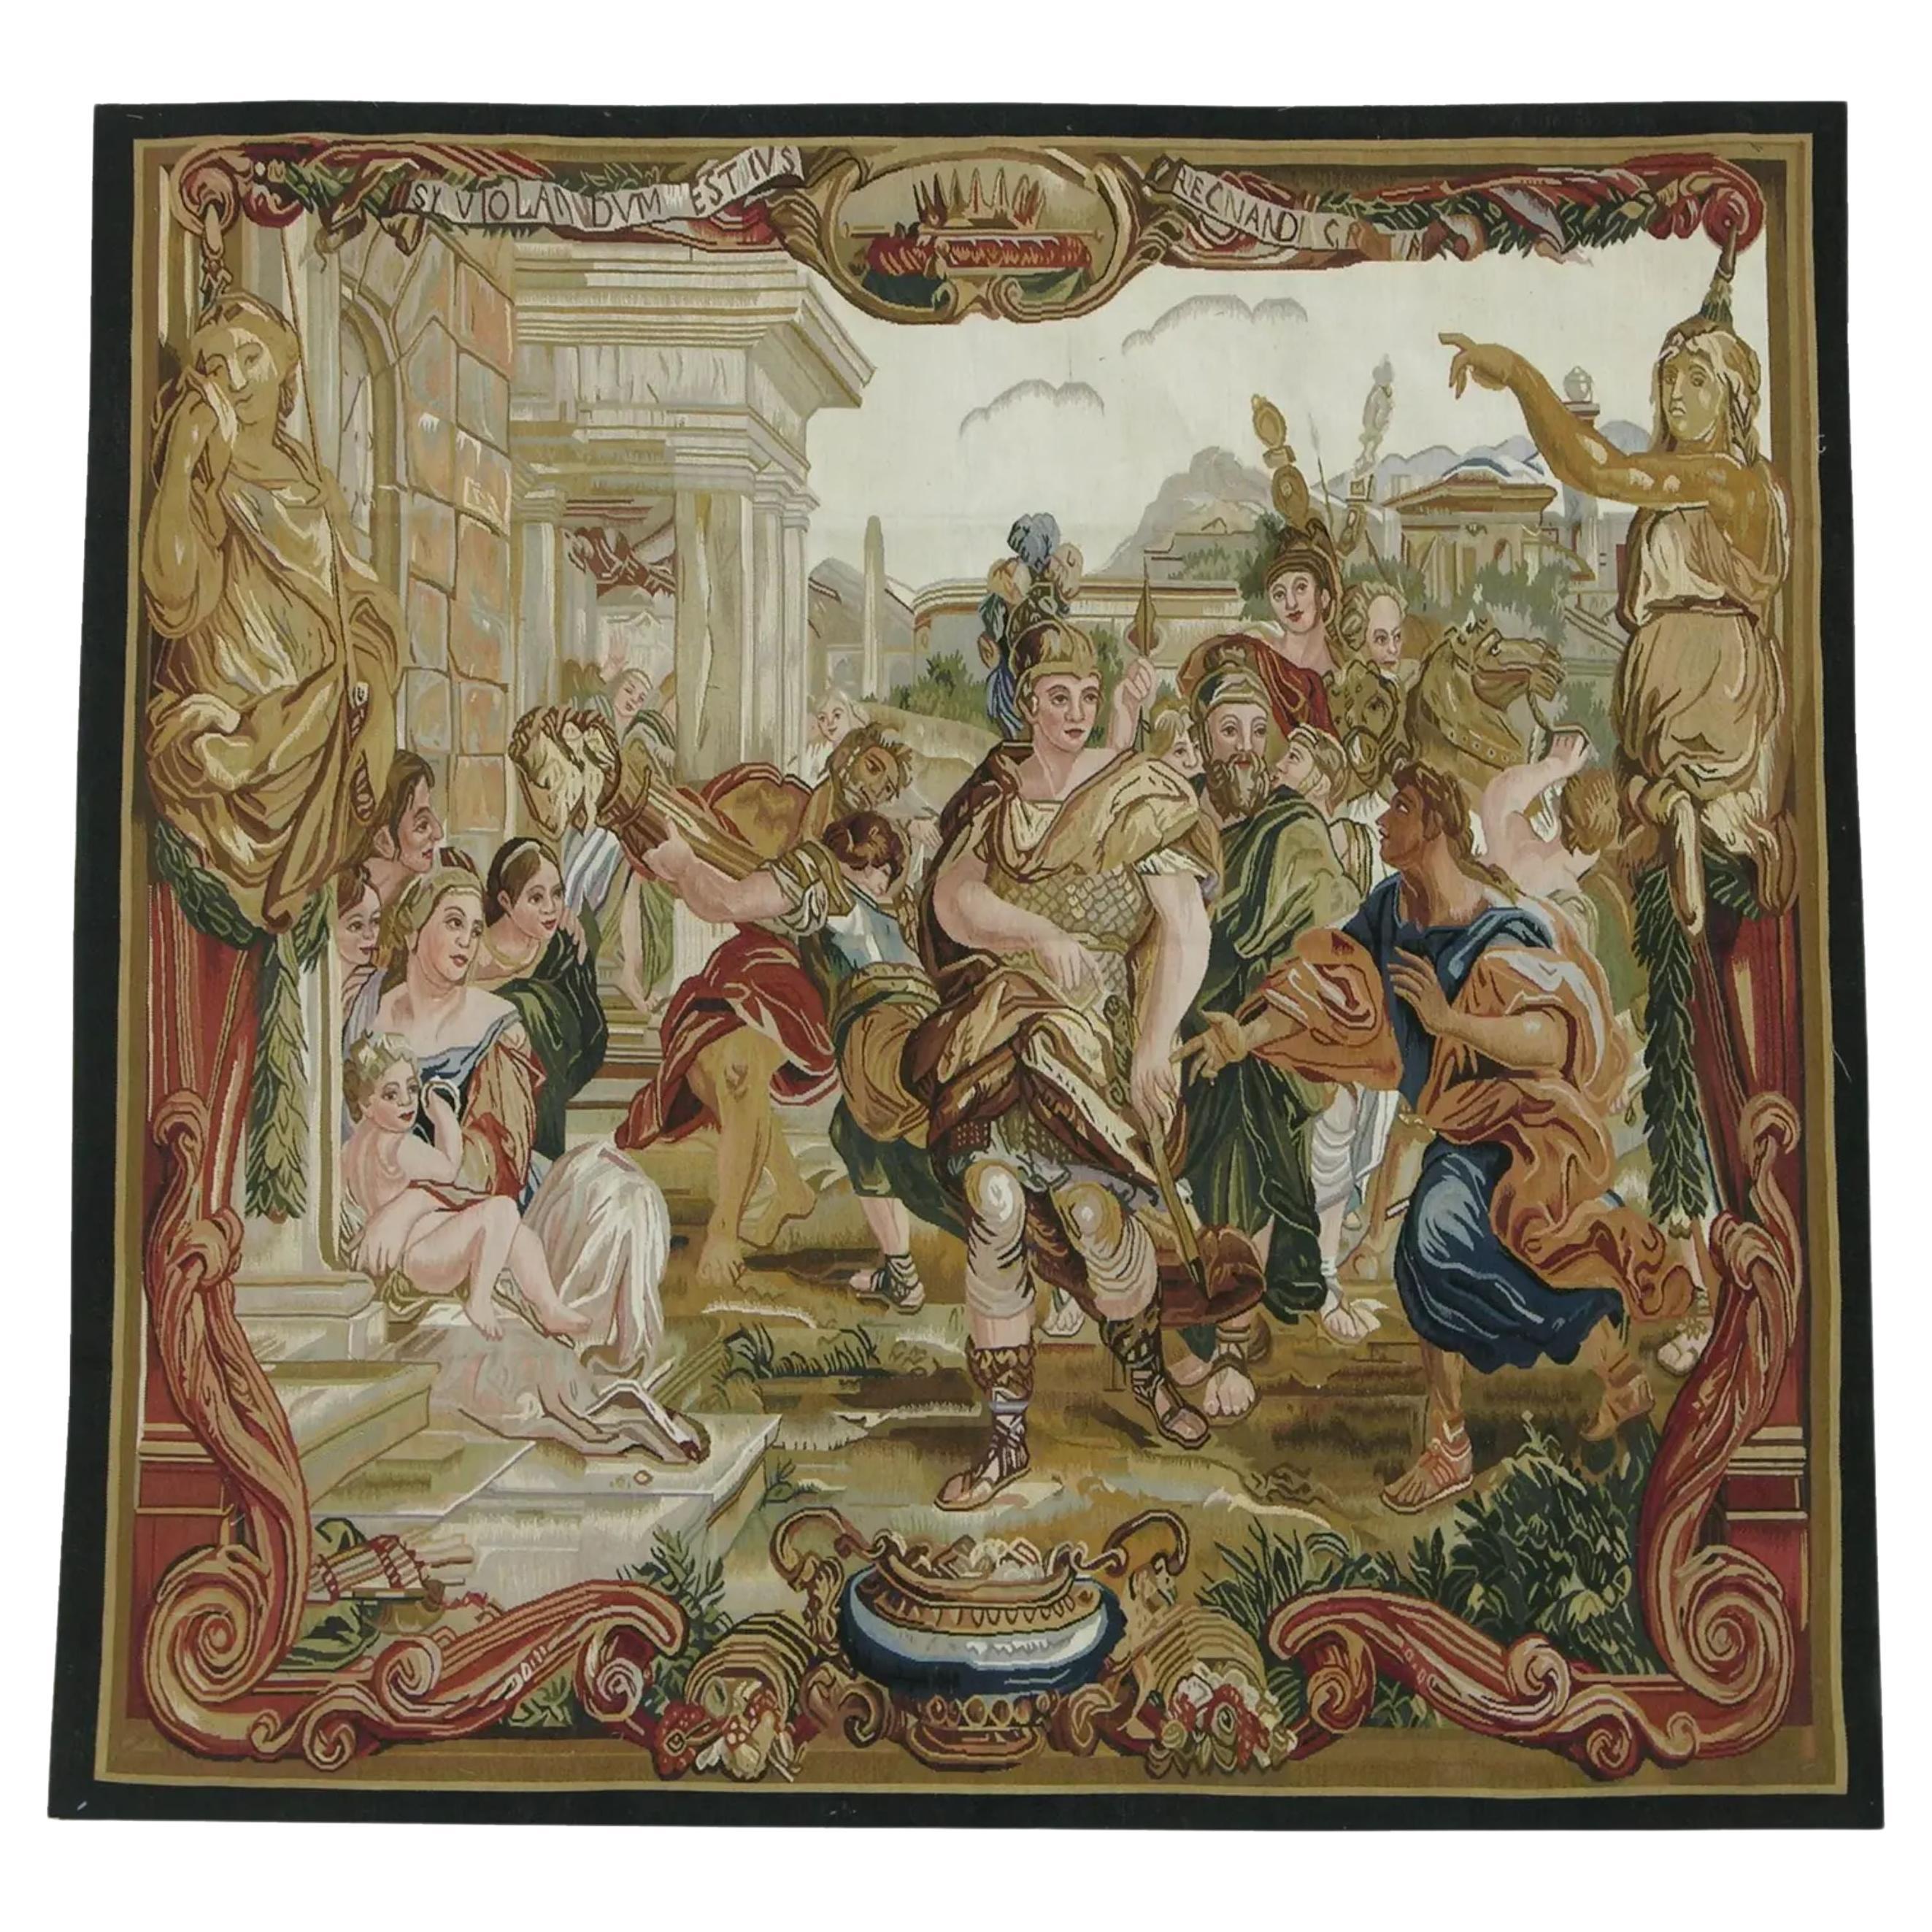 Wandteppich mit königlicher Darstellung, 5X4.10